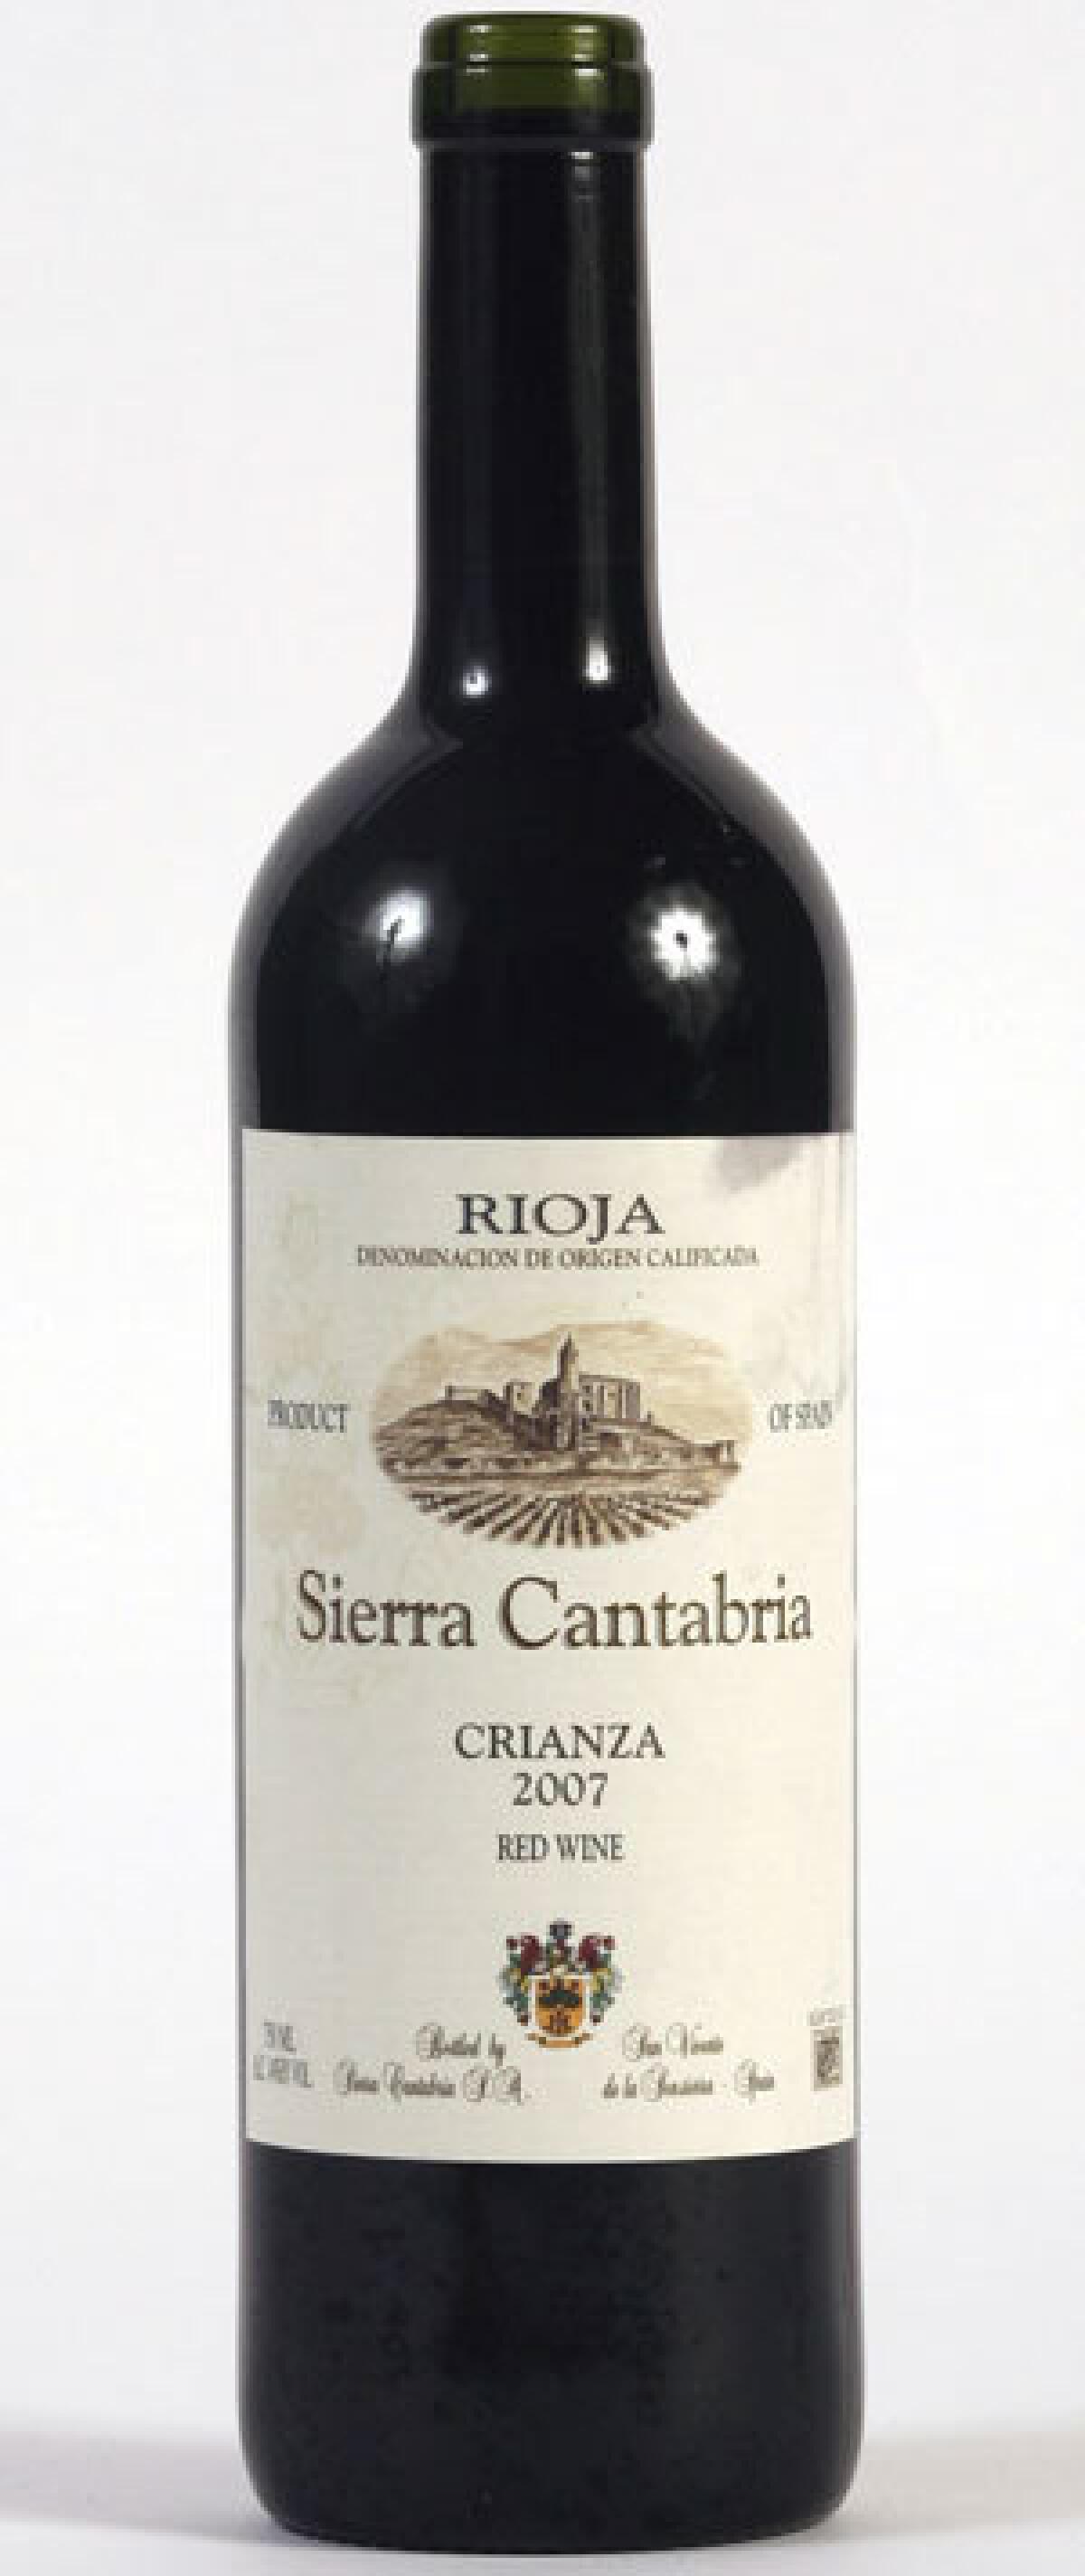 Sierra Cantabria 2007 Rioja wine.